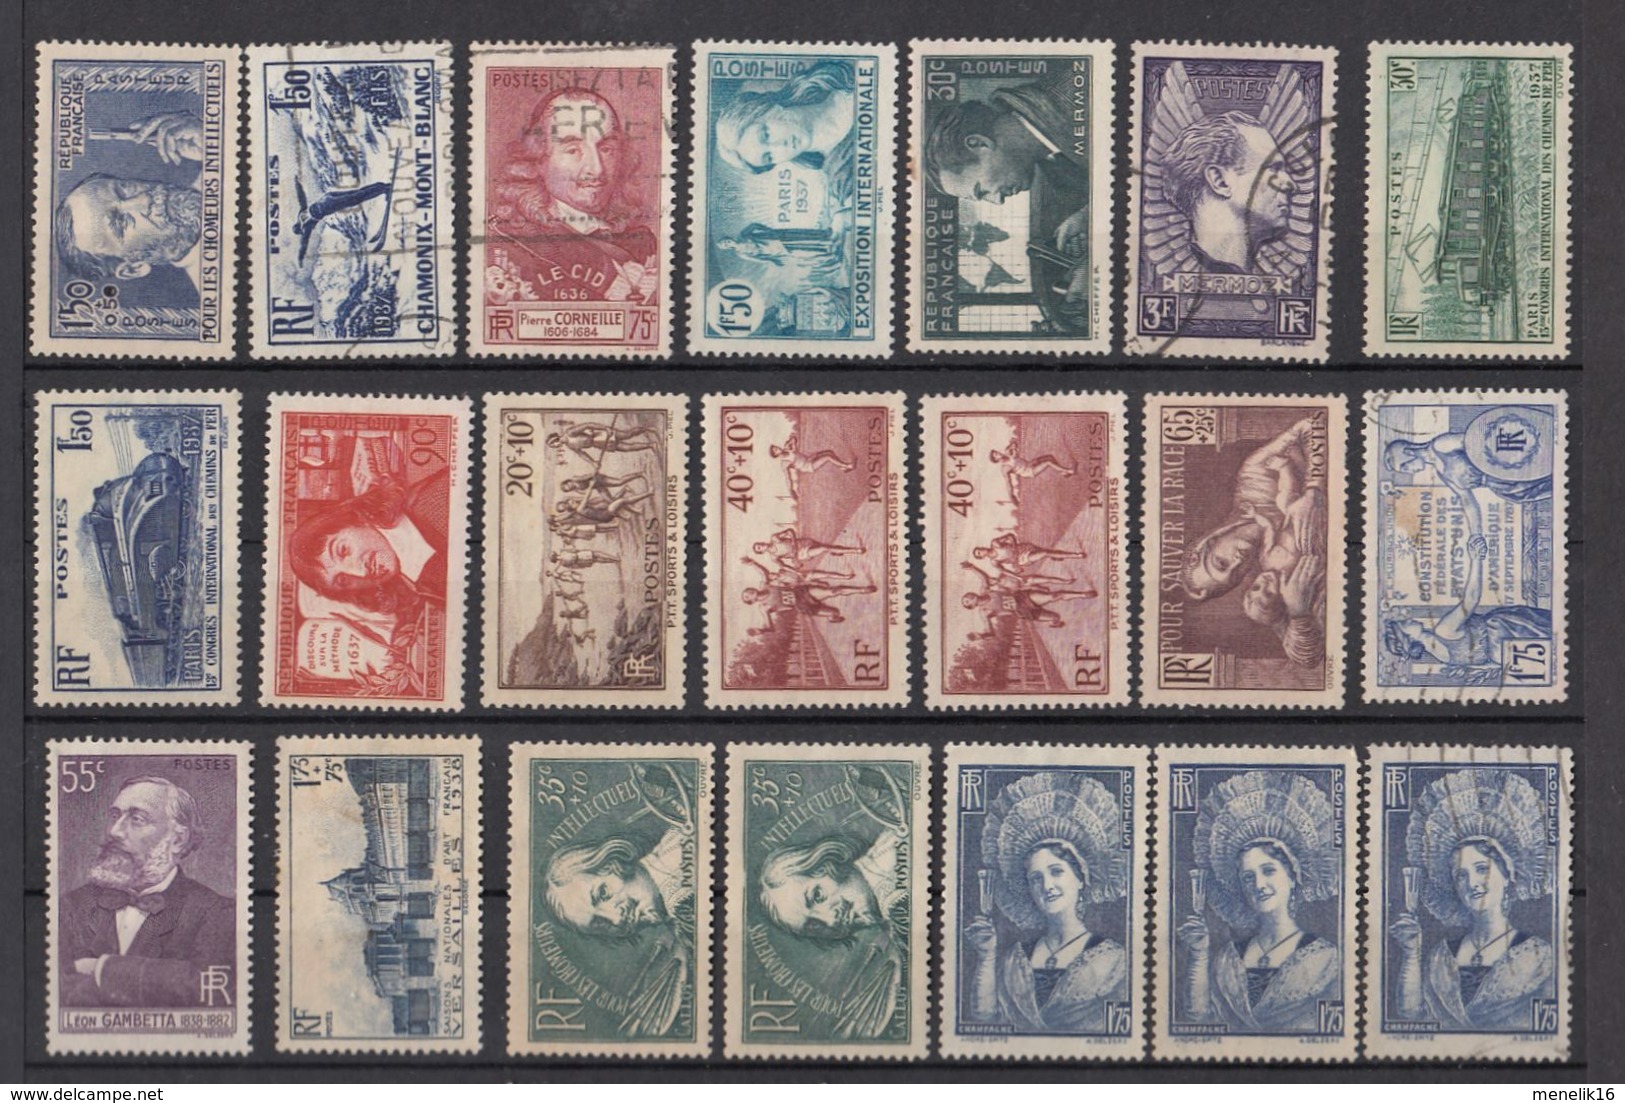 Ghle - Lot timbres France - Neufs sans gomme ou oblitérés - Classiques et timbres jusque 1959 - lot sympa